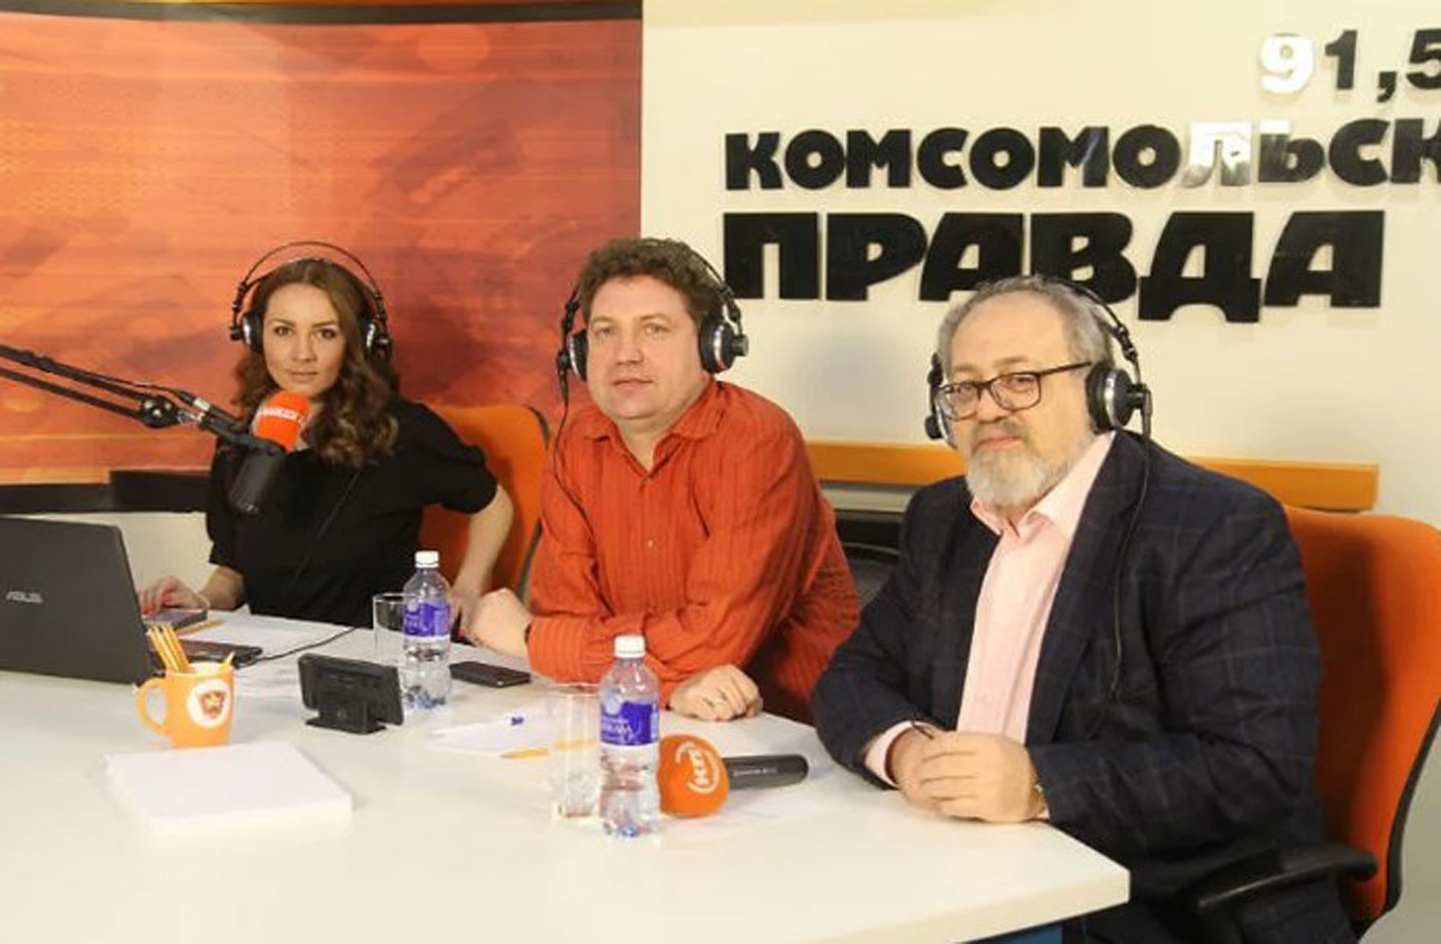 Radio pravda. Радио Комсомольская правда ведущие. Радиоведущие Комсомольской правды. Ведущая Комсомольской правды. Ведущие радио Комсомольская правда женщины.